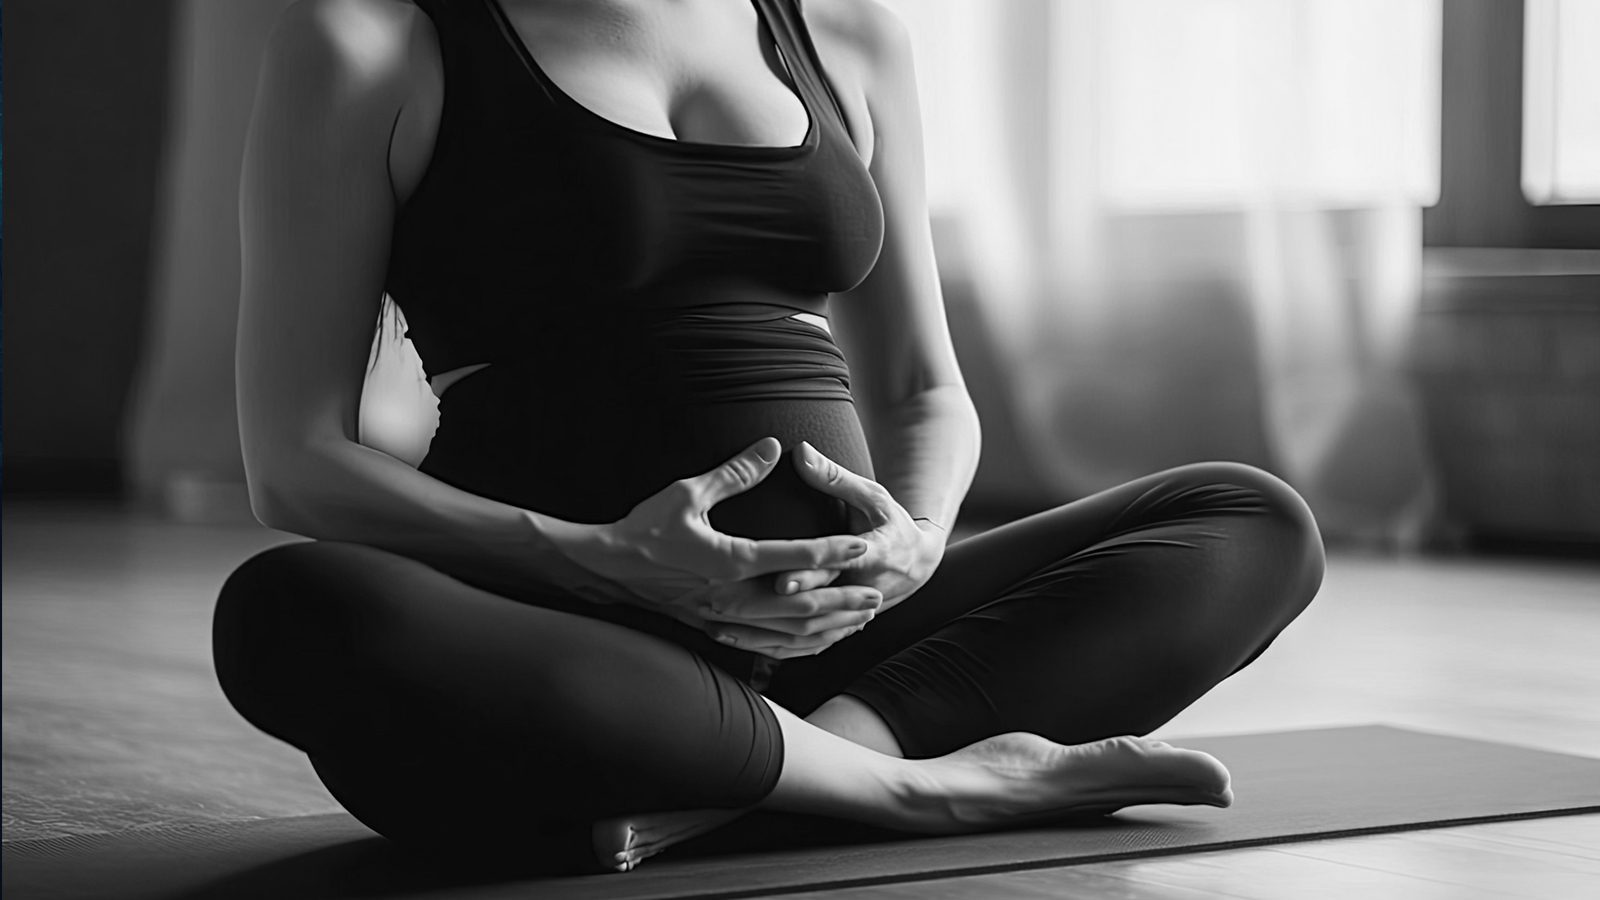 10 Prenatal Yoga Poses to Prepare for Delivery